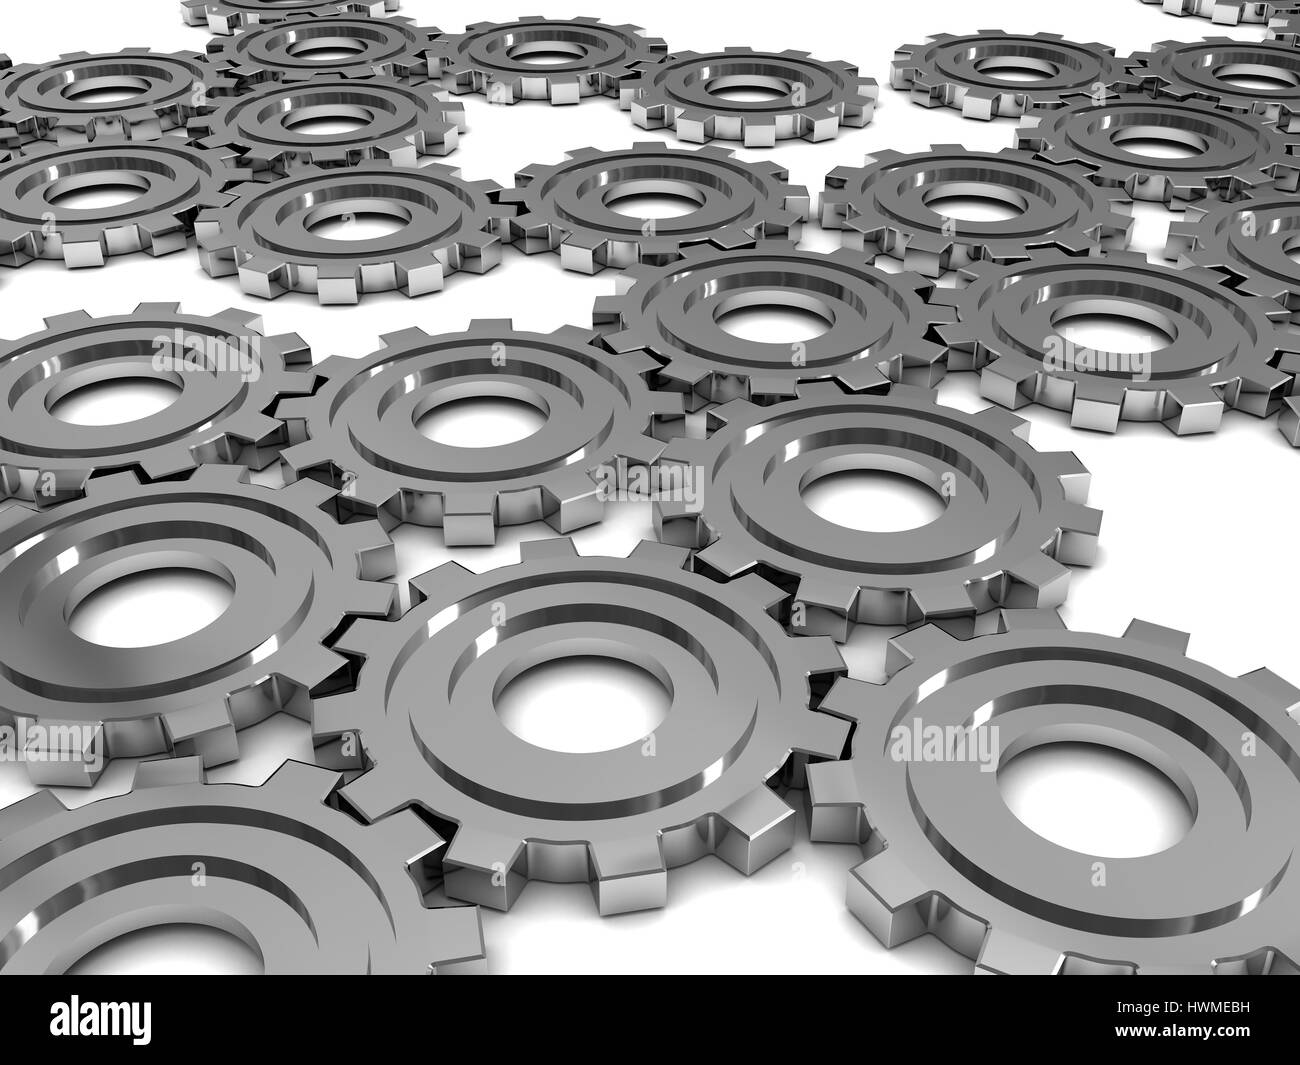 Abstract 3d illustration de roues d'engrenages en acier background Banque D'Images